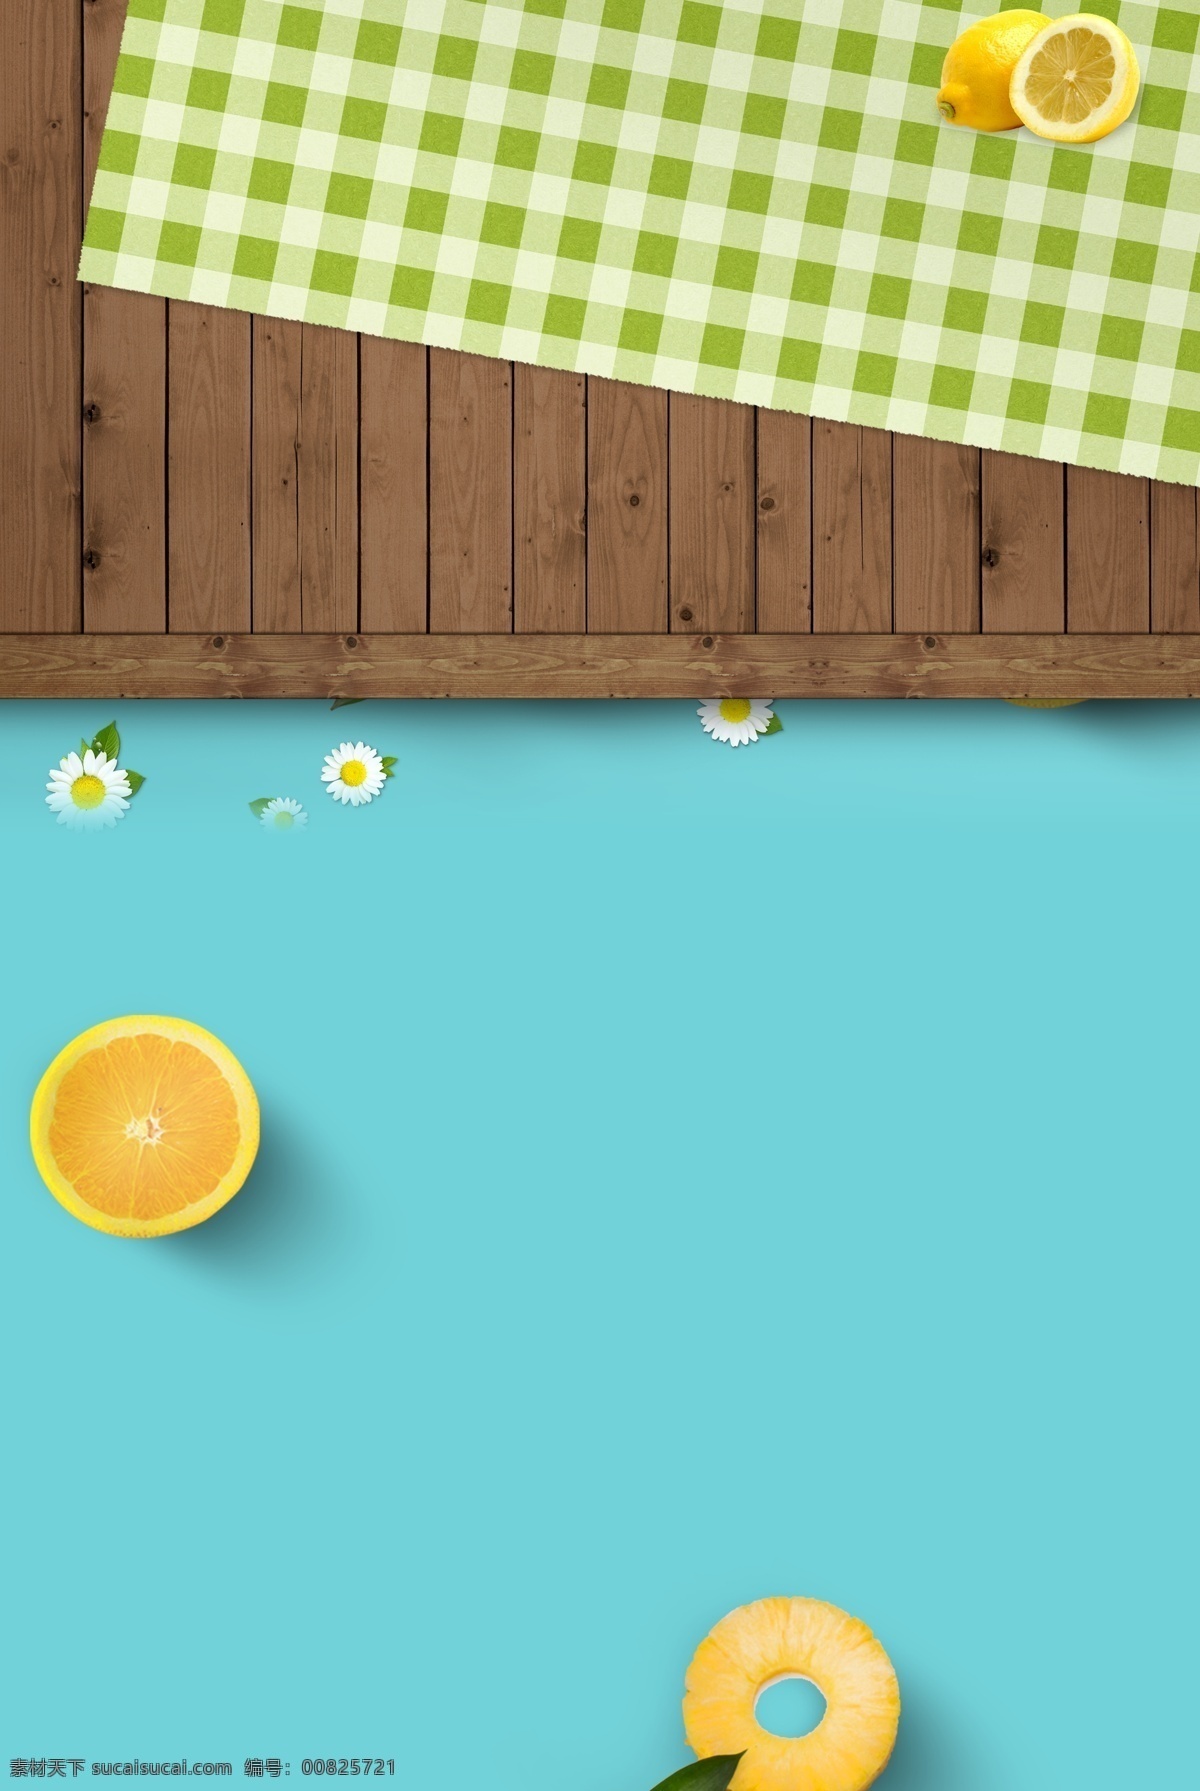 夏季 清新 蓝色 主题 海报 木板 甜甜圈 黄色 餐布 柠檬 雏菊 简约 文艺